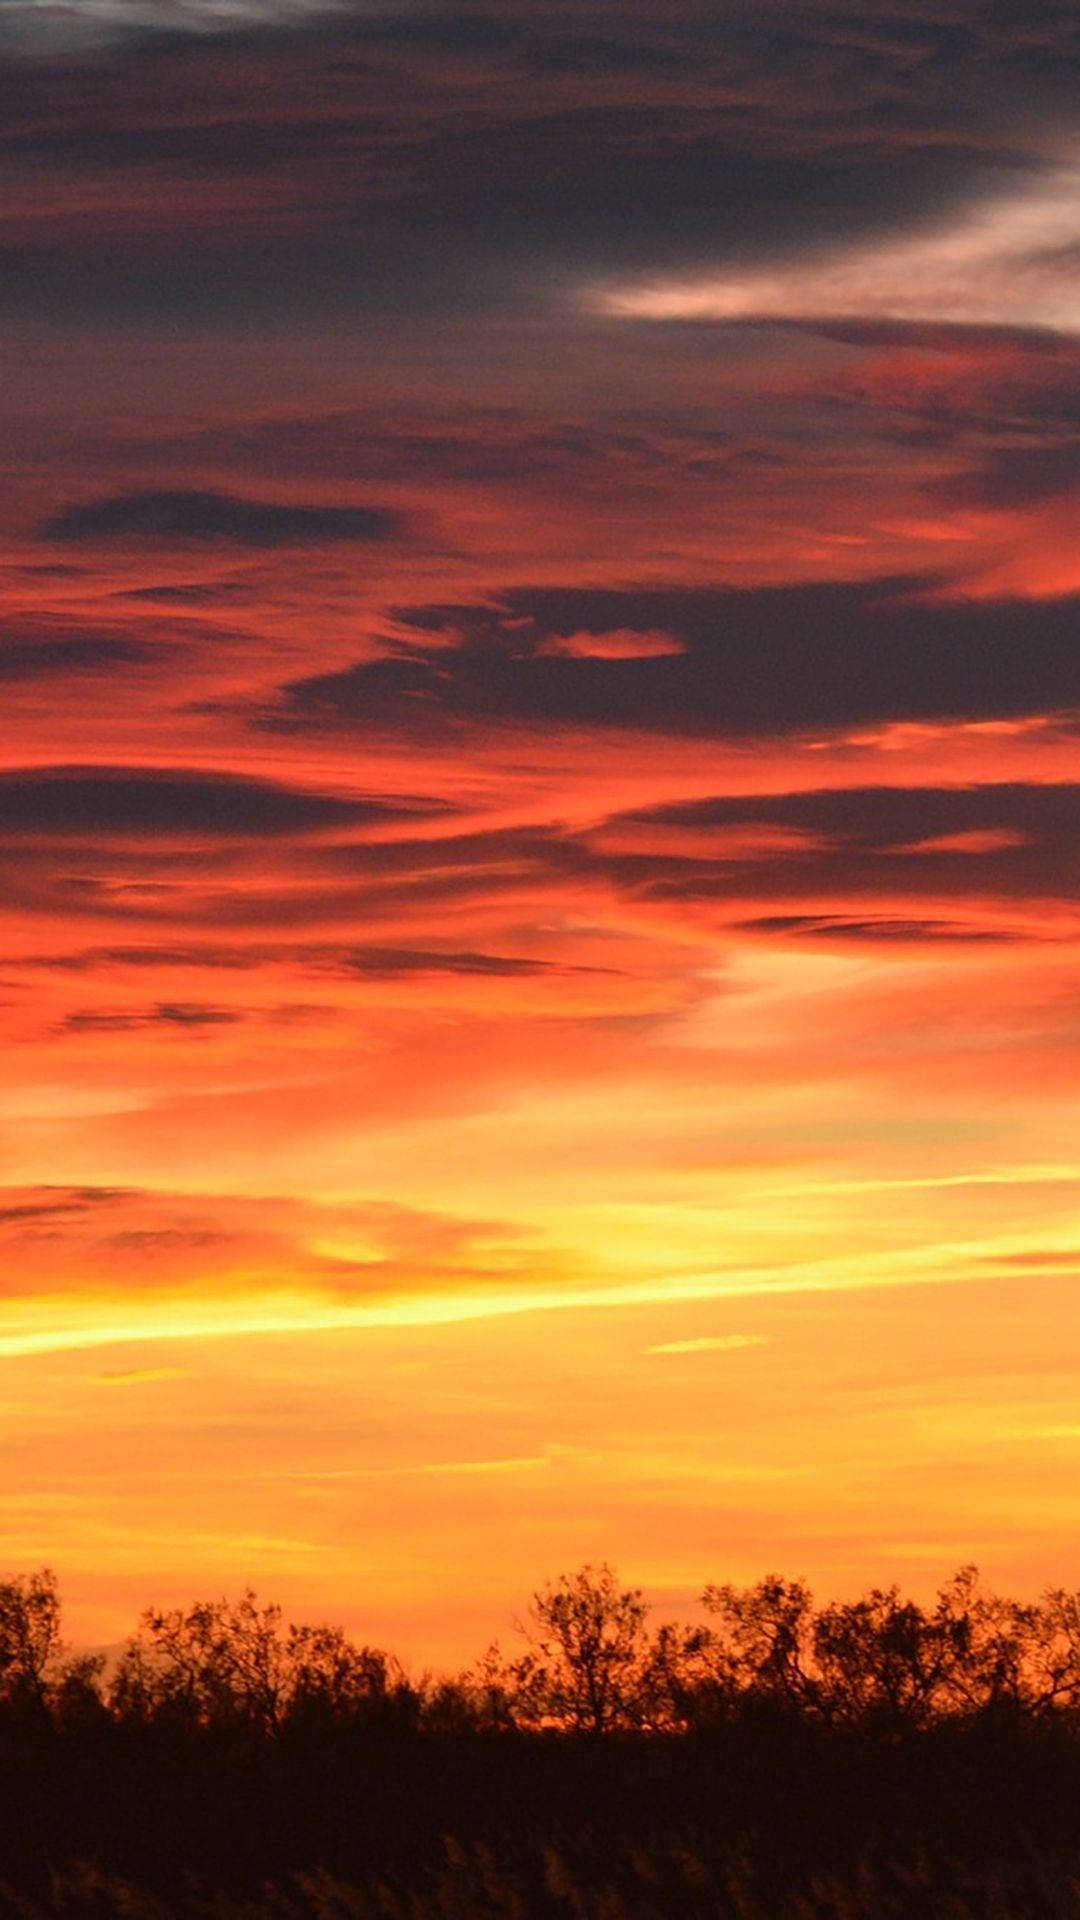 Sky View Sunset Wallpaper